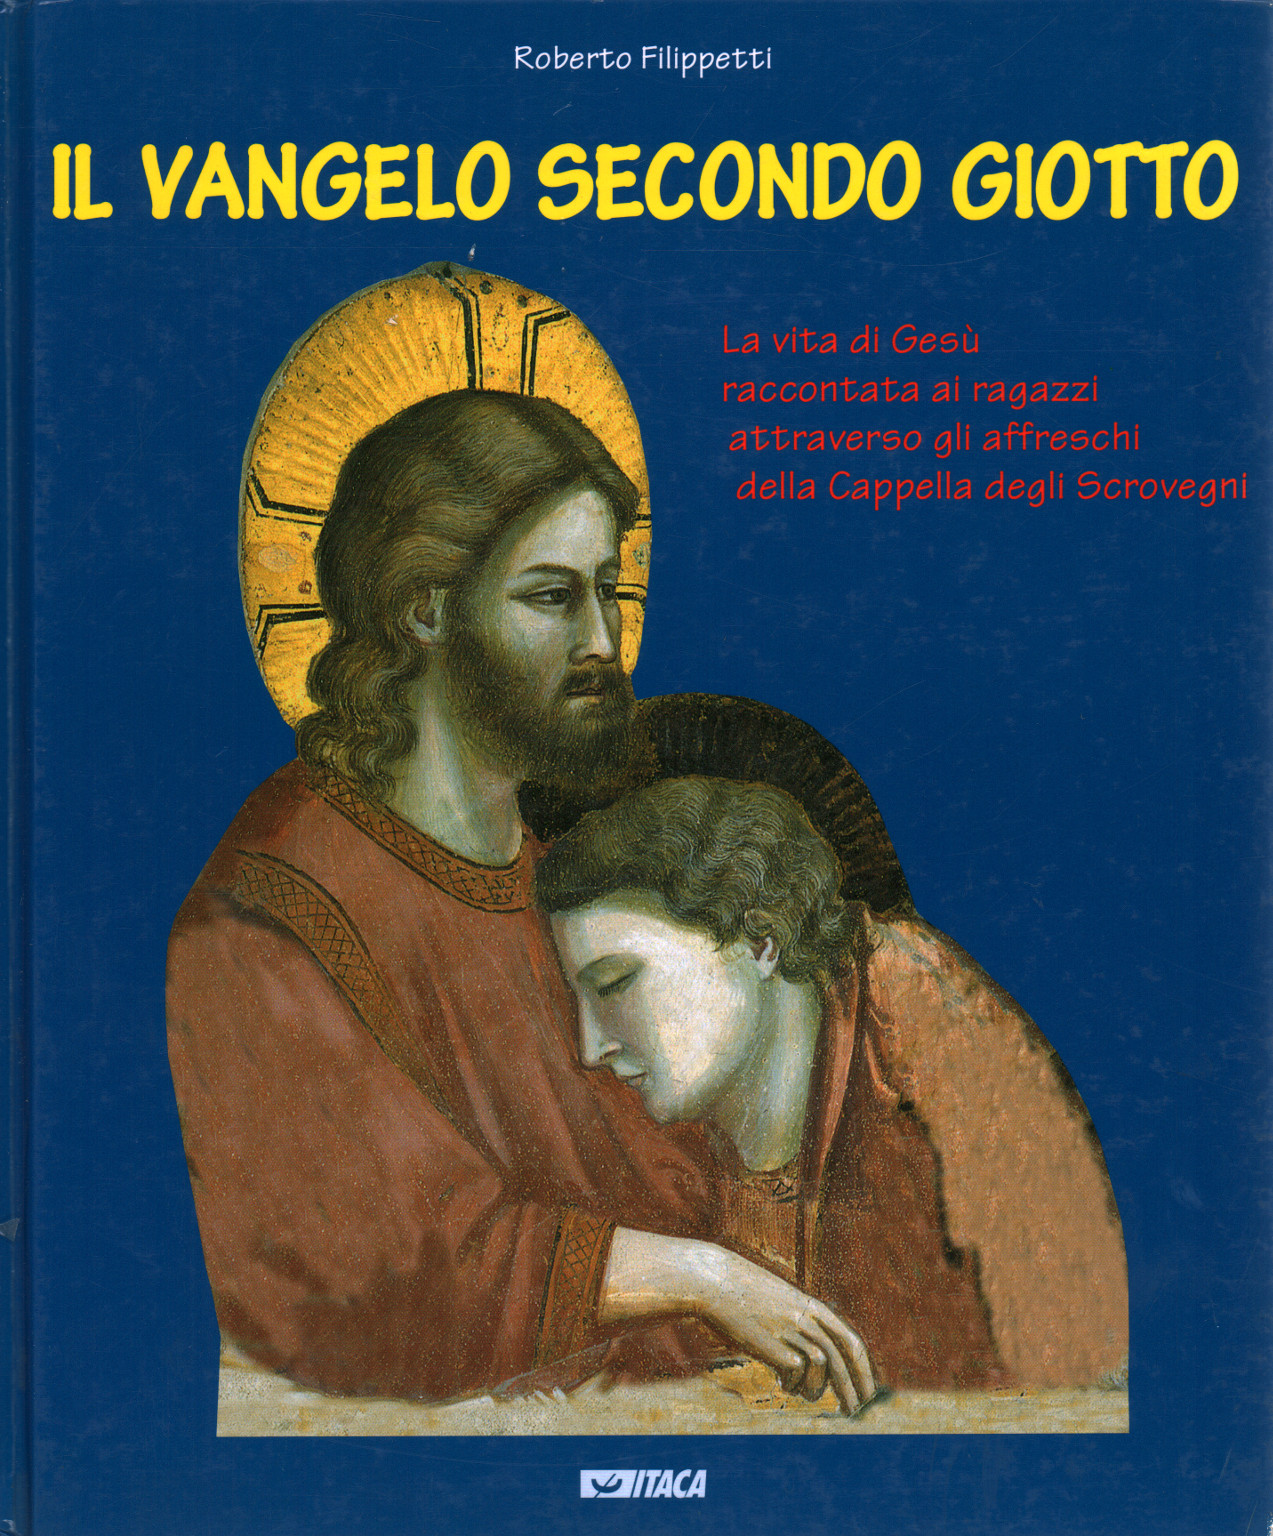 Das Evangelium nach Giotto